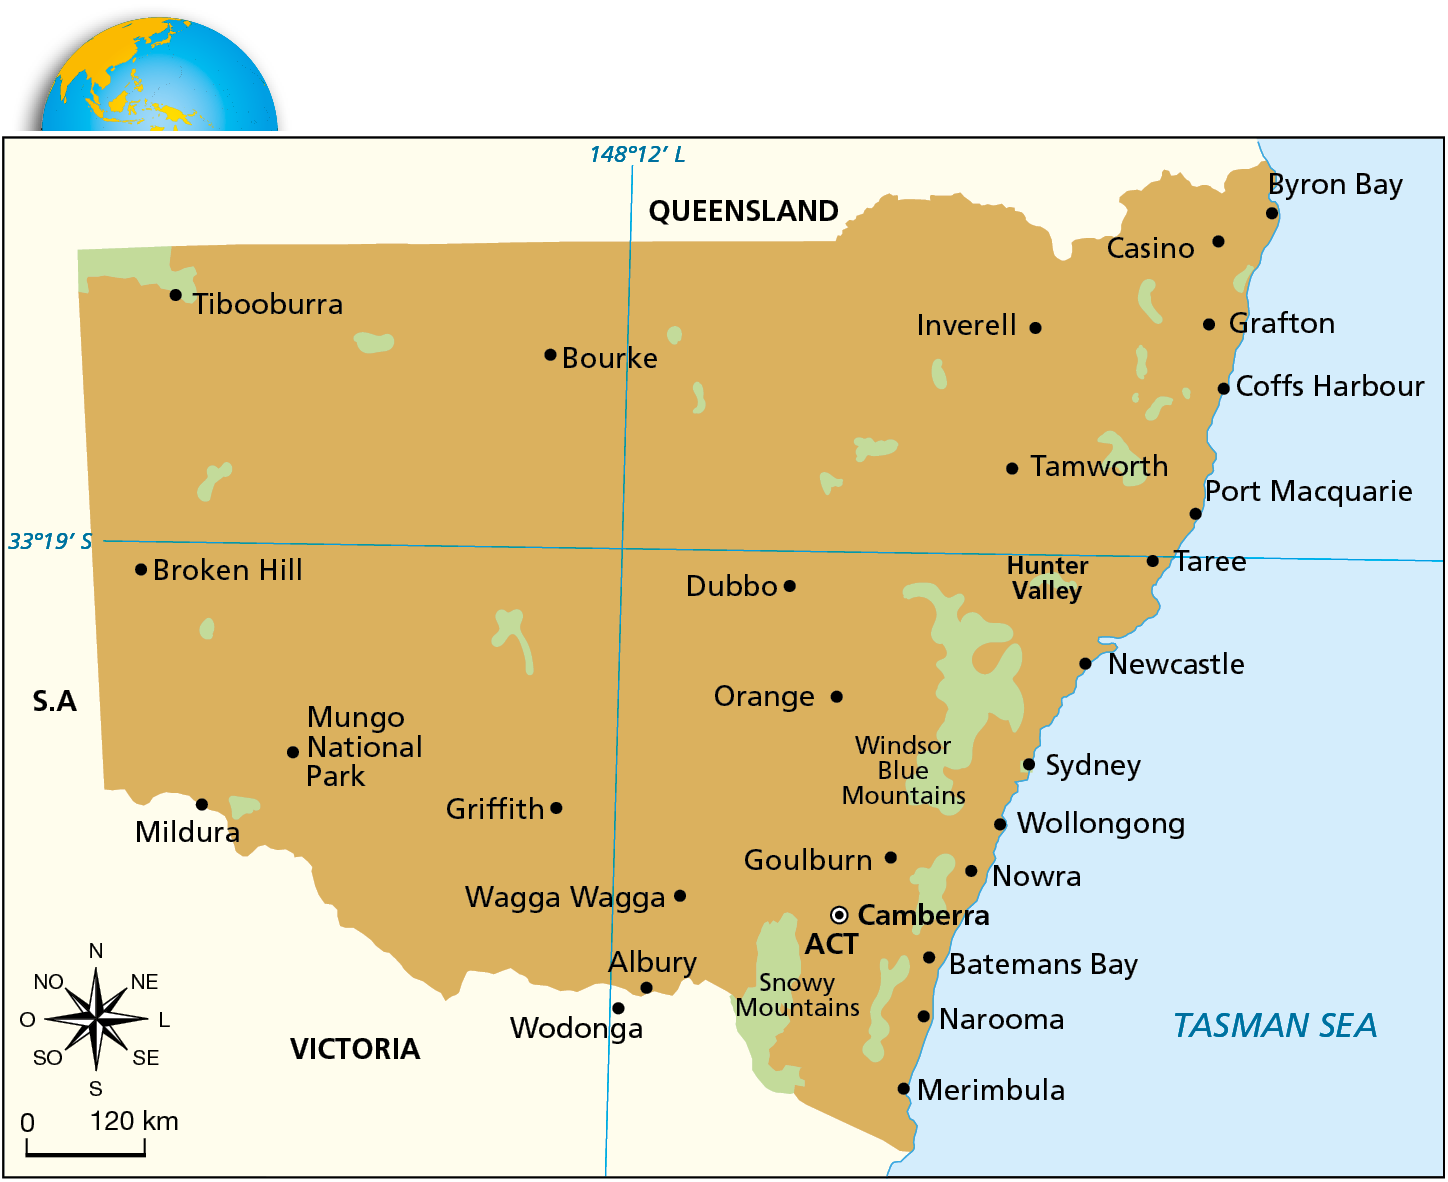 Mapa. Título: AUSTRALIA NEW SOUTH WALES (TWO THOUSAND AND TWENTY-TWO). QUEENSLAND Ilustração de um território na Austrália. Destaque para a capital CAMBERRA ao sudeste. No centro há alguns rios e lagos com cidades ao redor. No litoral leste há diversas cidades costeiras do mar TASMAN SEA. Na parte superior há um globo terrestre com destaque para a porção sudeste da Austrália. Na parte inferior esquerda há uma rosa dos ventos e, abaixo dela, a escala.